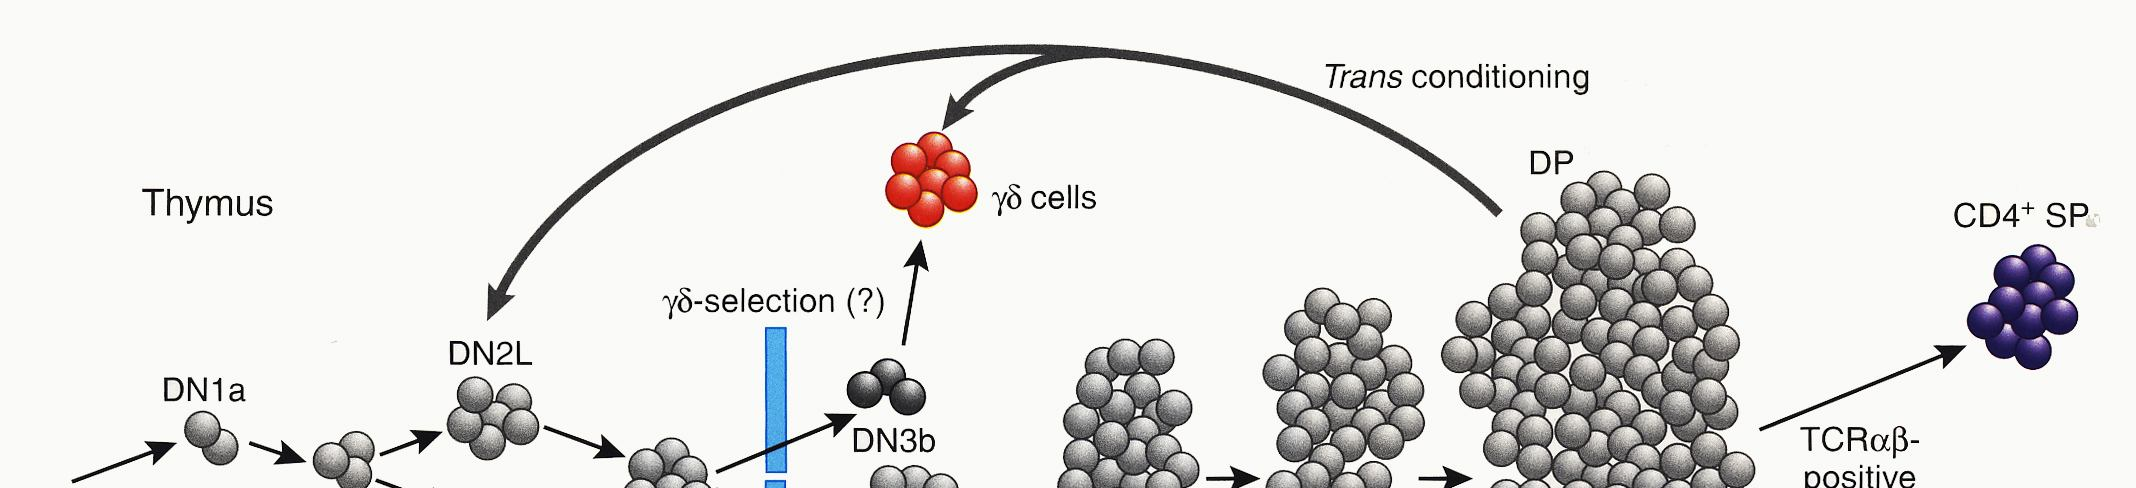 διάφορα στάδια διαφοροποίησης τους. Το υποσύνολο DN1 περιλαμβάνει κύτταρα με χαρακτηριστικά CD44+ CD25-. Οι αναδιατάξεις των γονιδίων του Τ κυτταρικού υποδοχέα γίνονται ιεραρχικά.